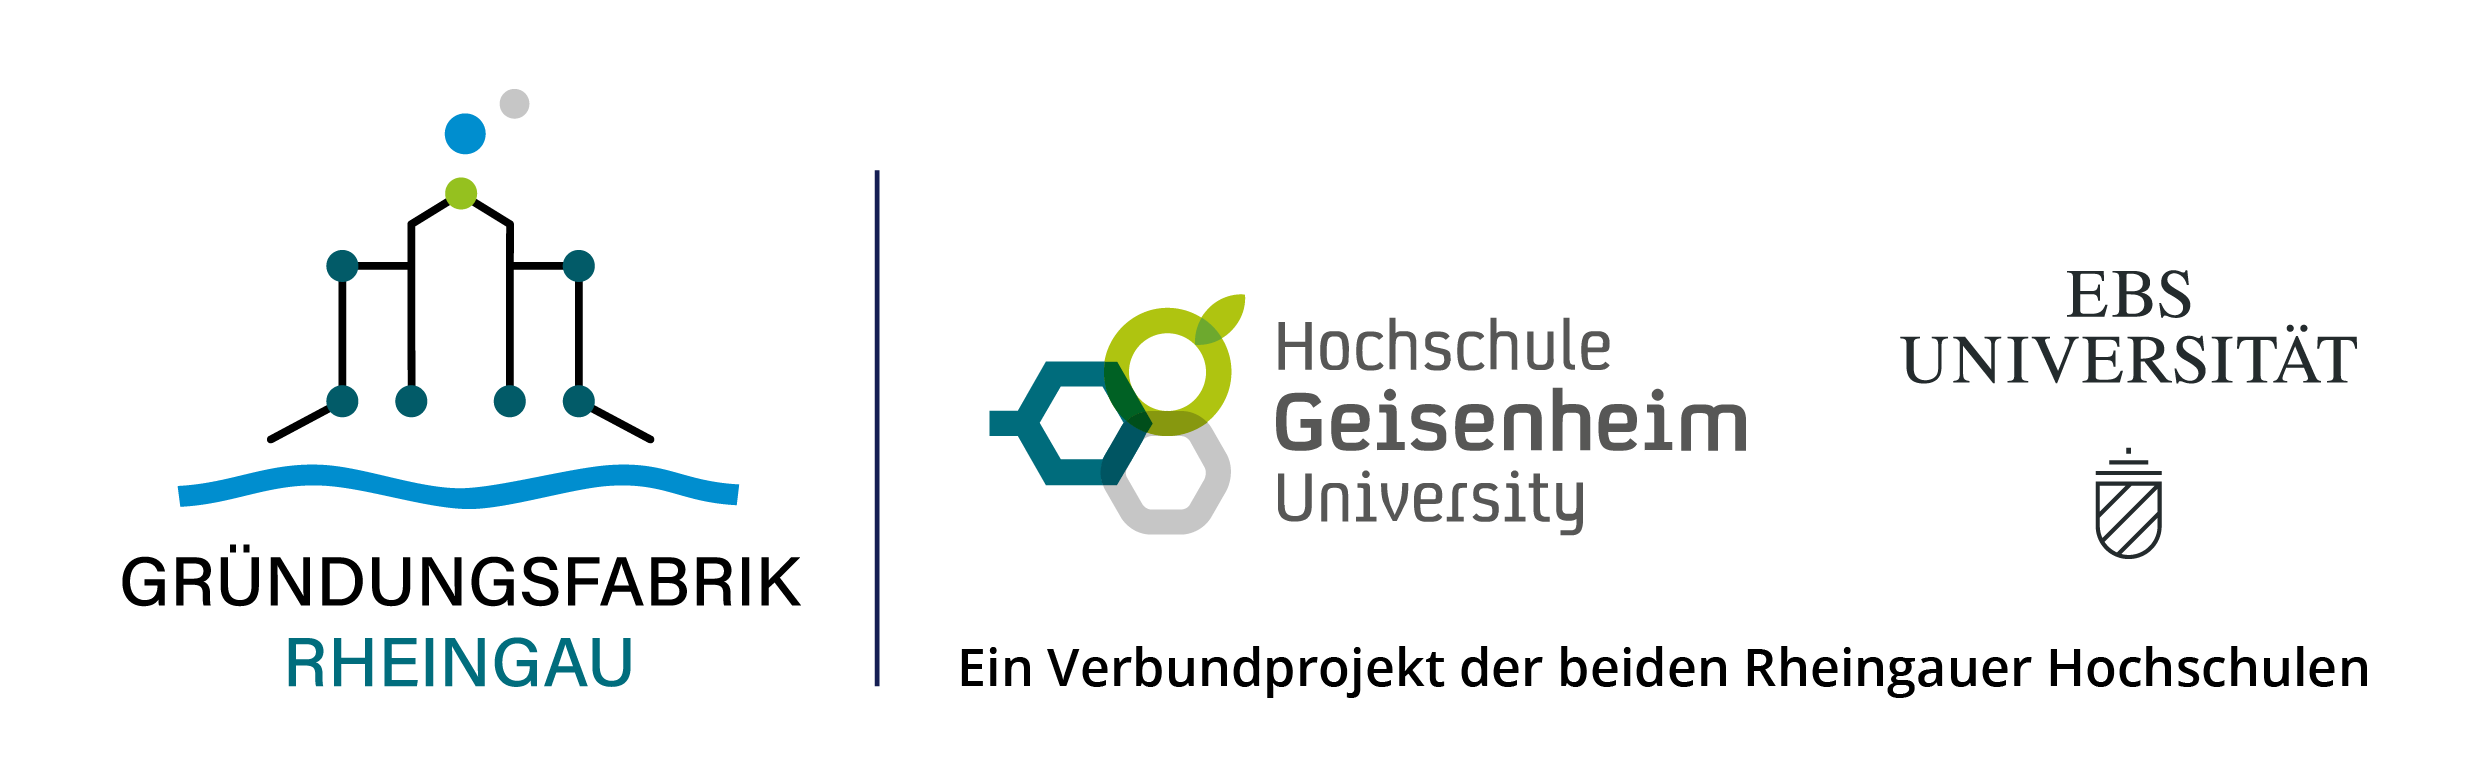 Gründungsfabrik Rheingau Logo